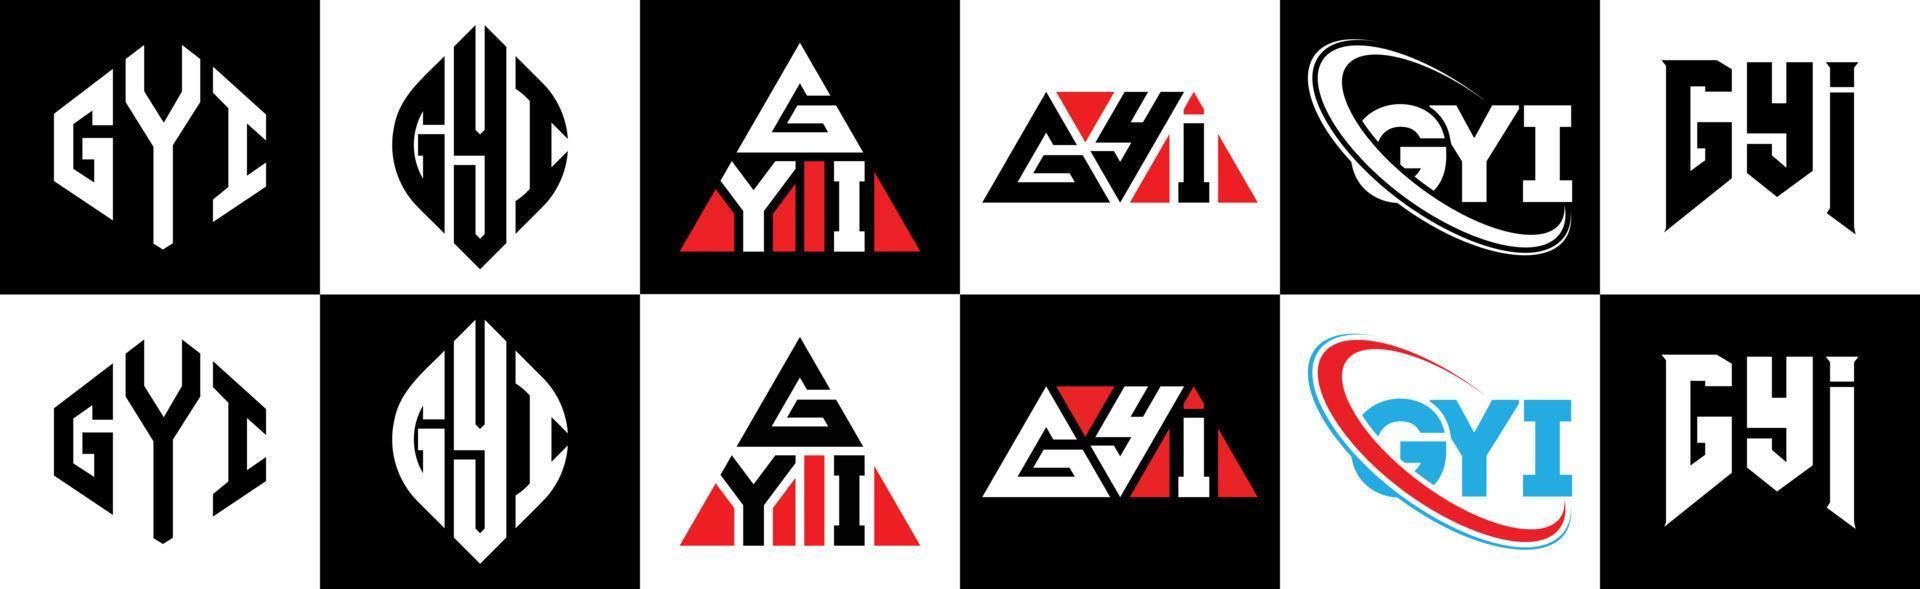 gyi-Buchstaben-Logo-Design in sechs Stilen. gyi polygon, kreis, dreieck, hexagon, flacher und einfacher stil mit schwarz-weißem farbvariationsbuchstabenlogo in einer zeichenfläche. gyi minimalistisches und klassisches logo vektor